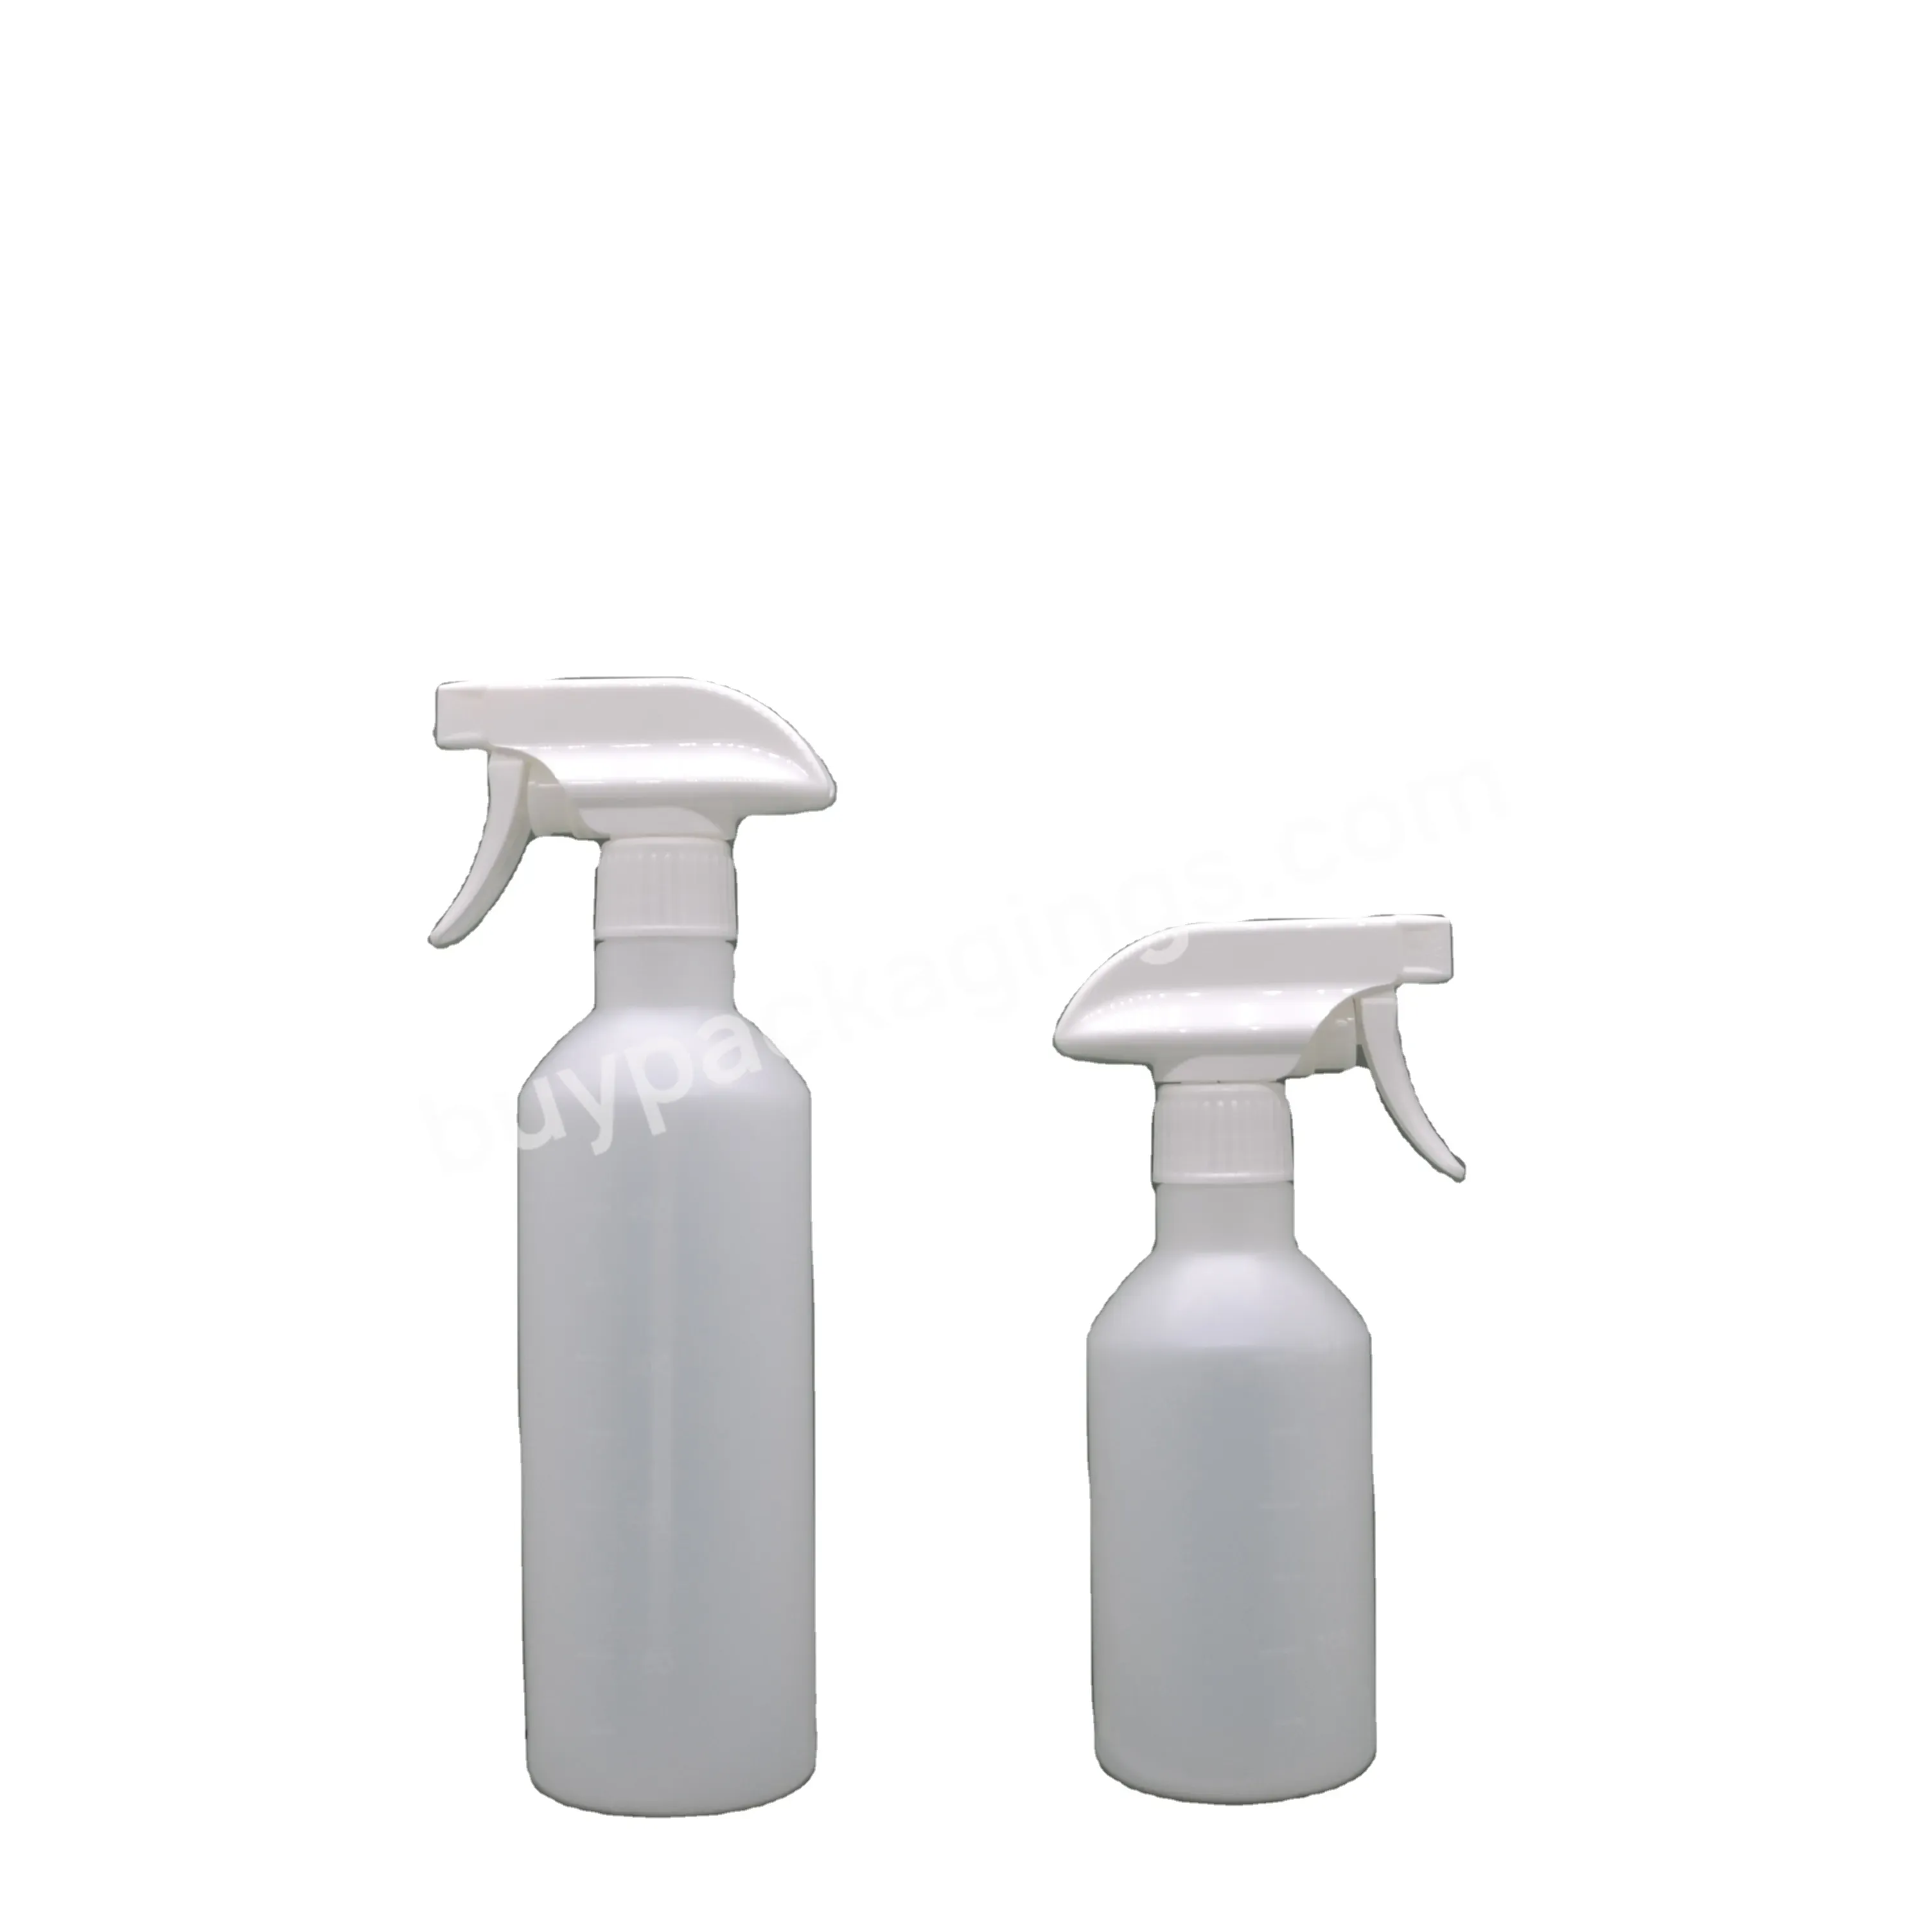 350ml 500ml White Spray Bottle Cleaner Spray Bottle - Buy 500ml Spray Bottle,Cleaner Bottle,350ml Spray Bottle.